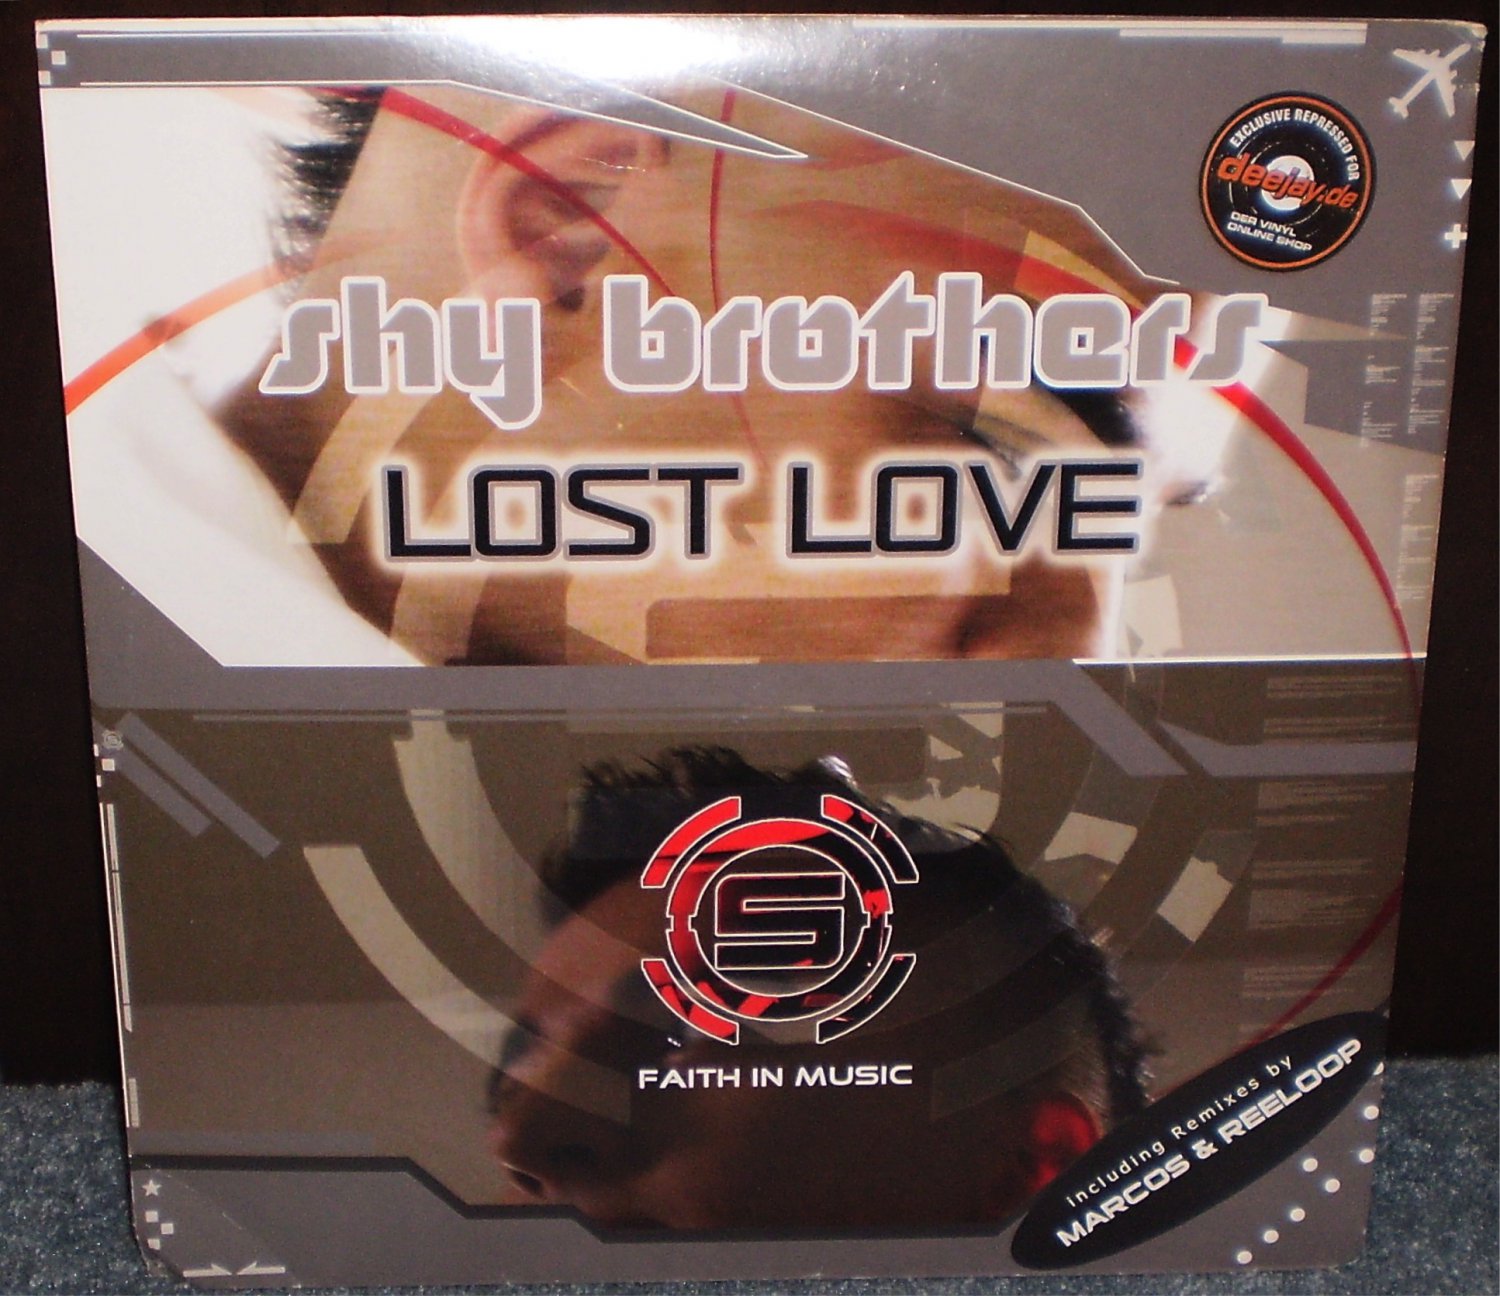 Shy Brothers Lost Love 12" Vinyl LP Remix Single NEW Original Marcos Reeloop EP